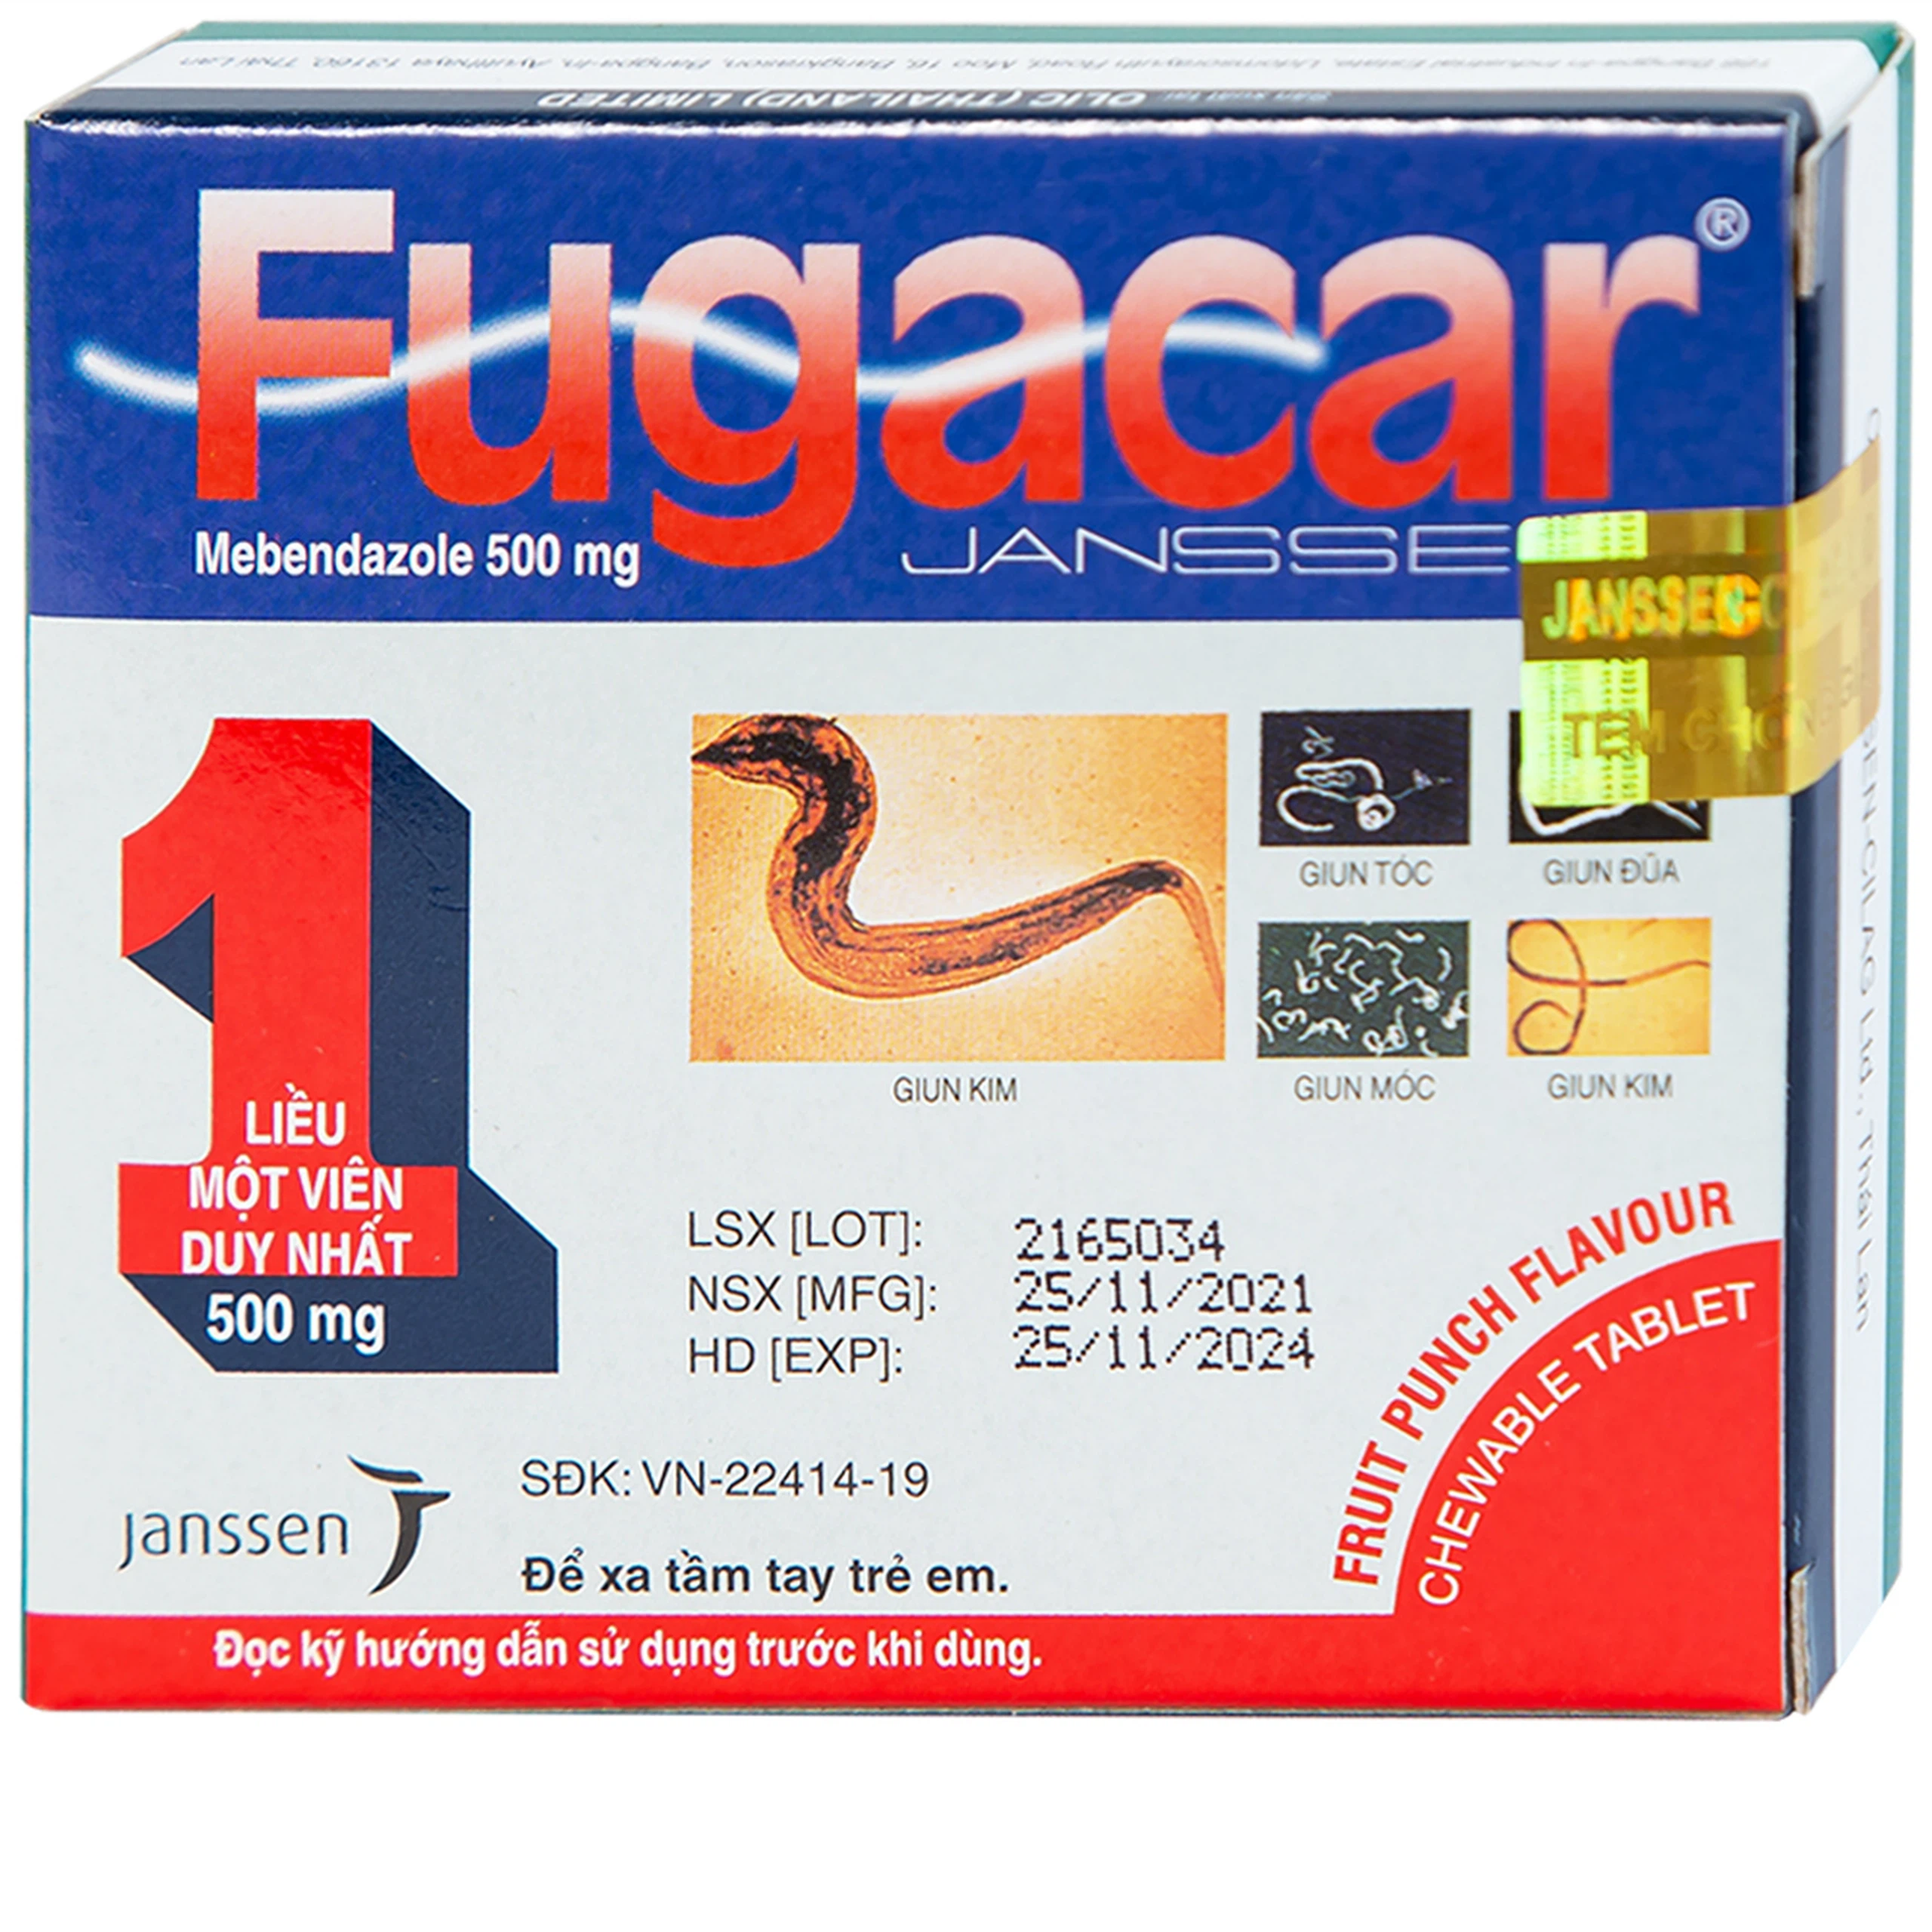 Thuốc Fugacar Janssen hương trái cây điều trị nhiễm một hay nhiều loại giun đường ruột (1 viên)